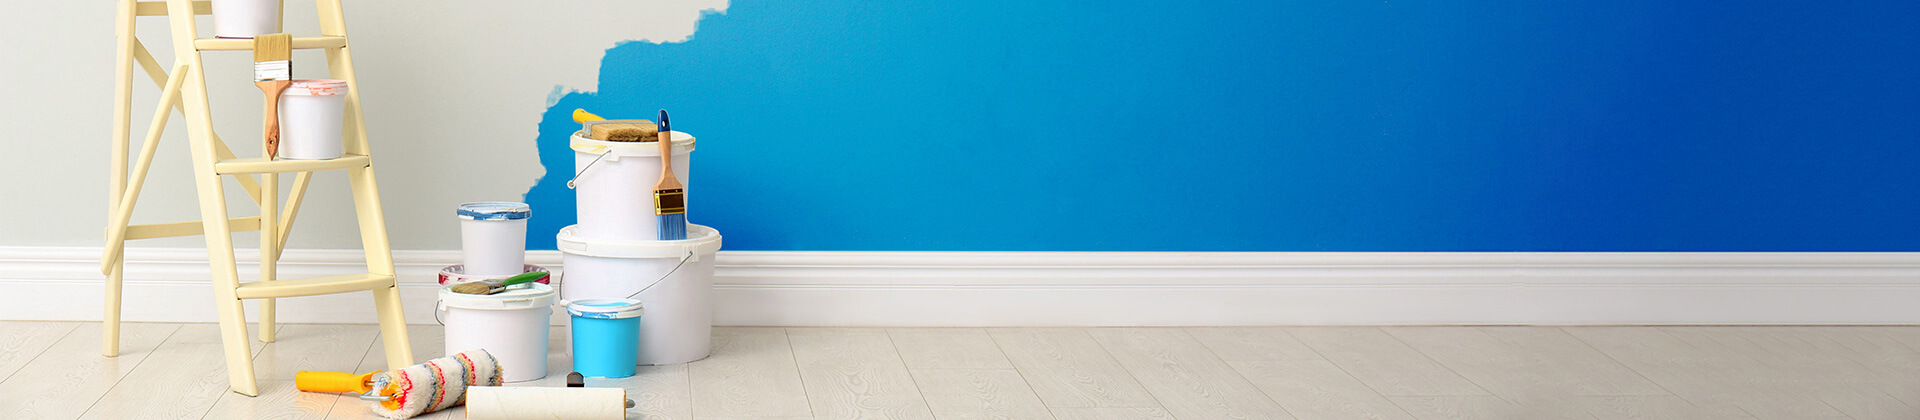 weiße Wand in einem hellen Raum wird blau gestrichen